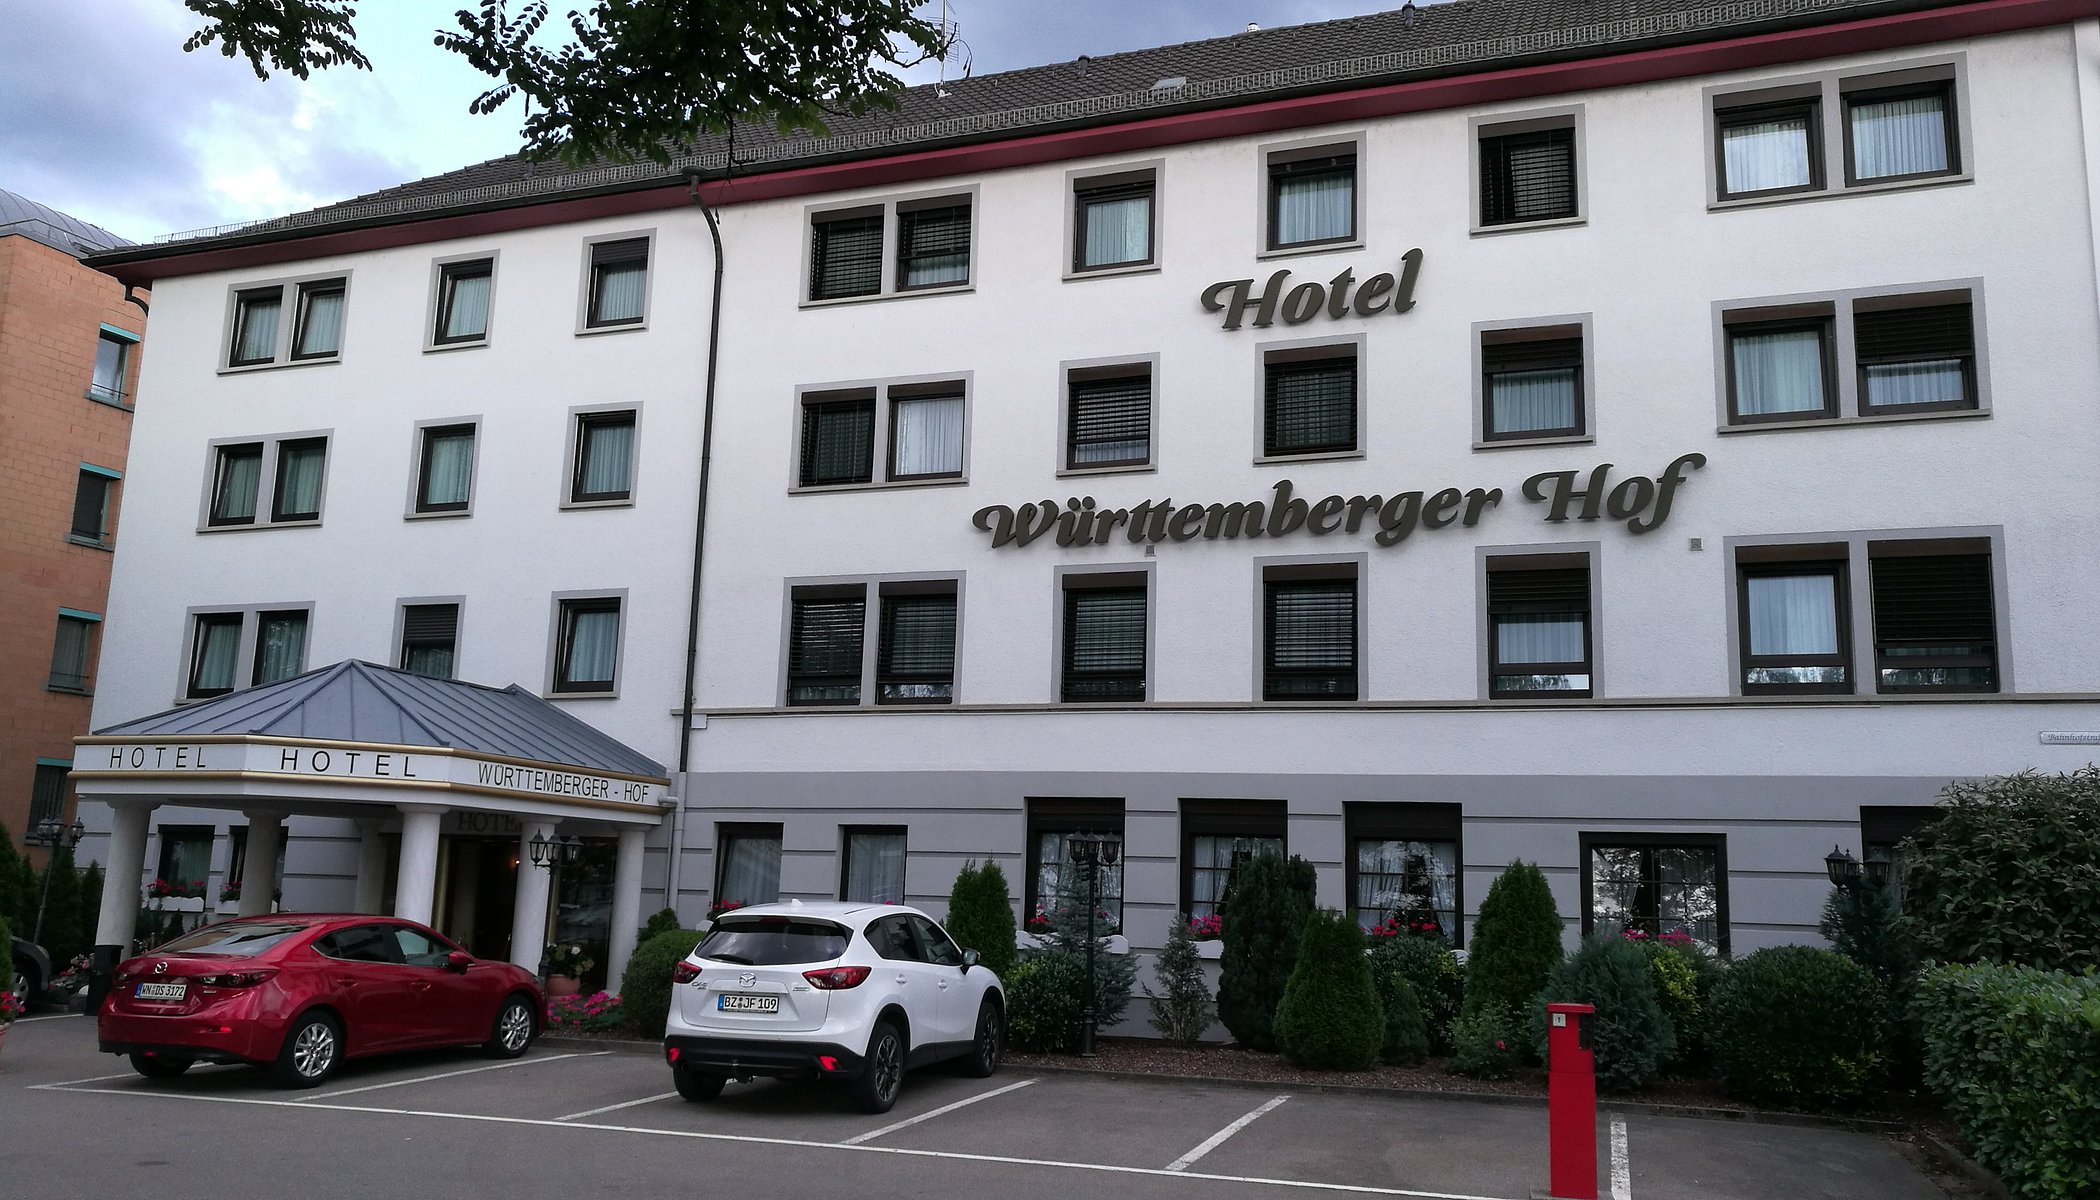 Hotel Württemberger Hof image